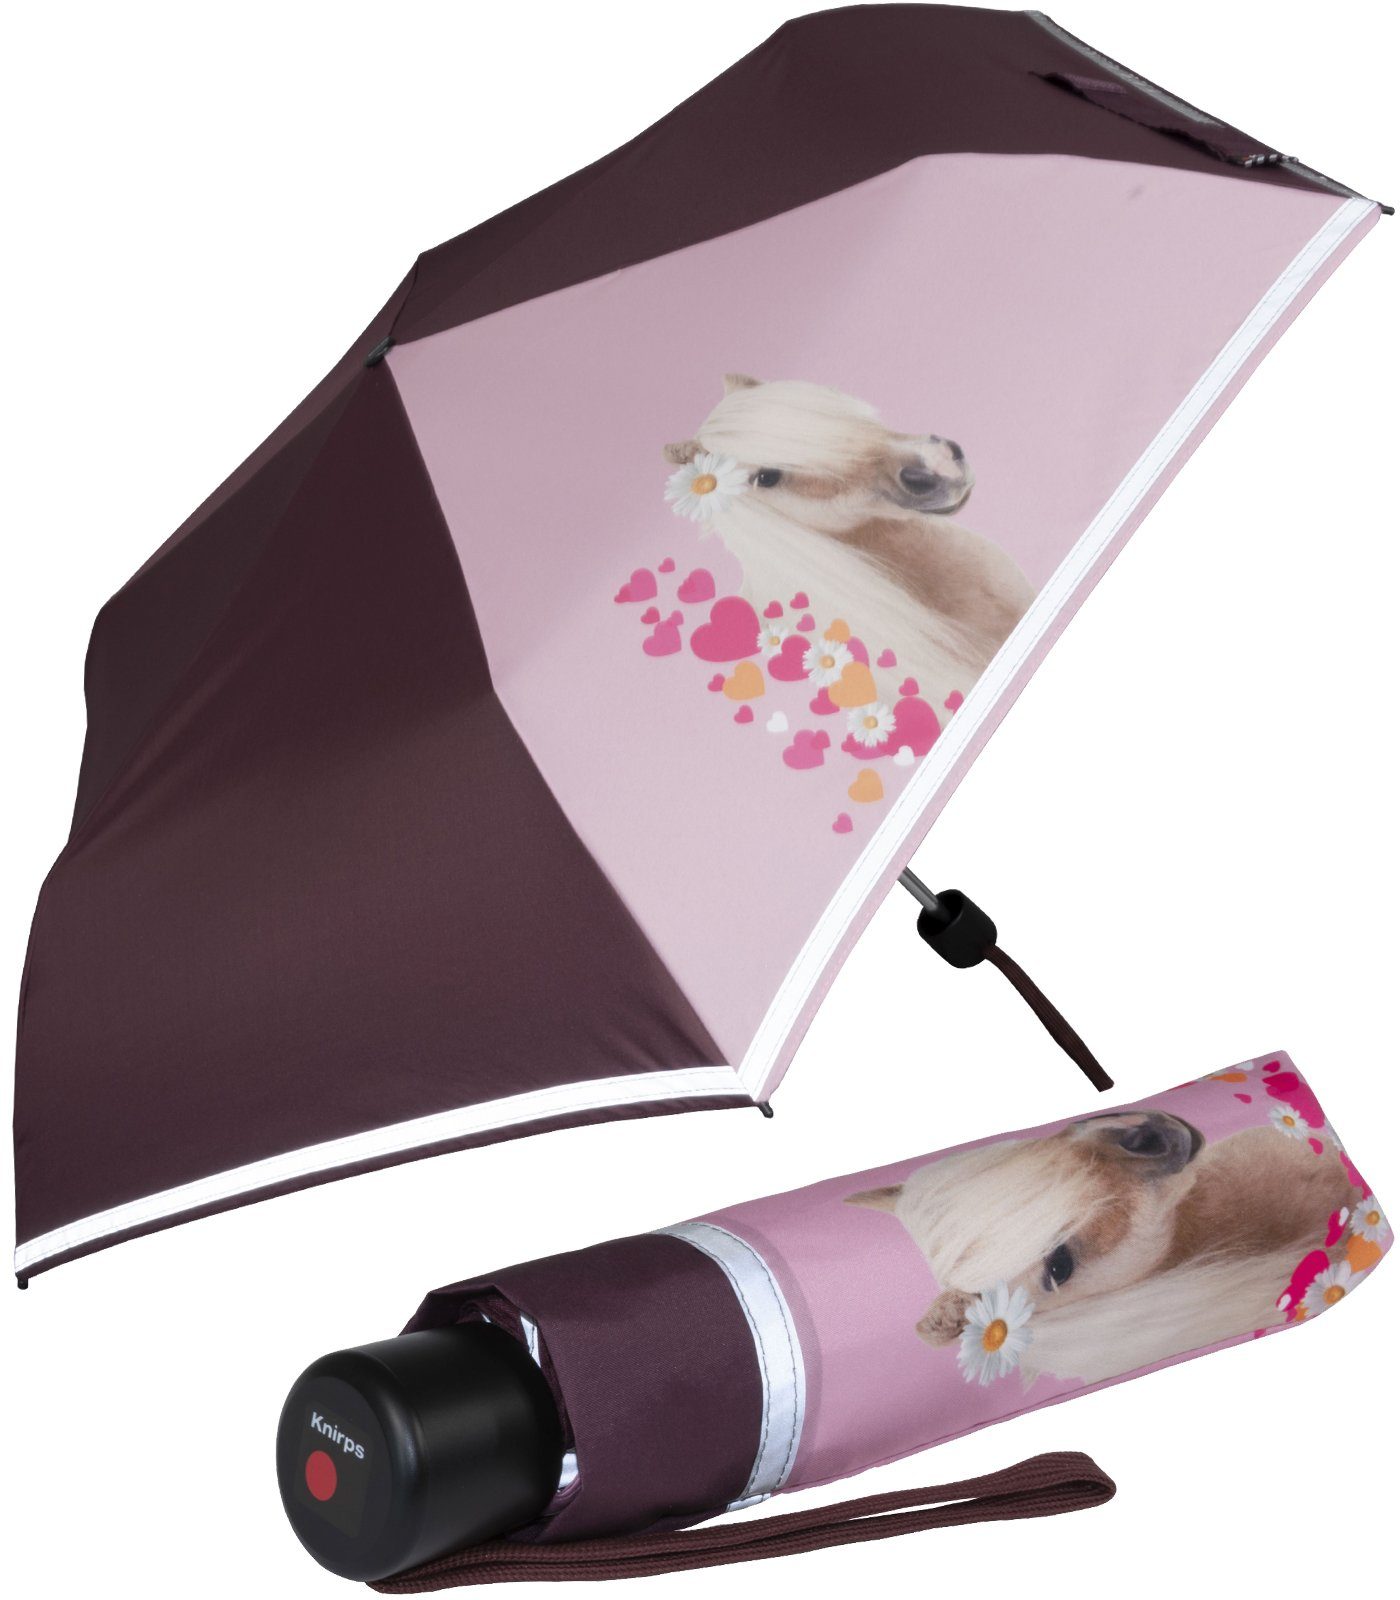 Knirps® Taschenregenschirm Kinderschirm 4Kids reflective mit Reflexborte, Sicherheit auf dem Schulweg, Pferde, Horselove